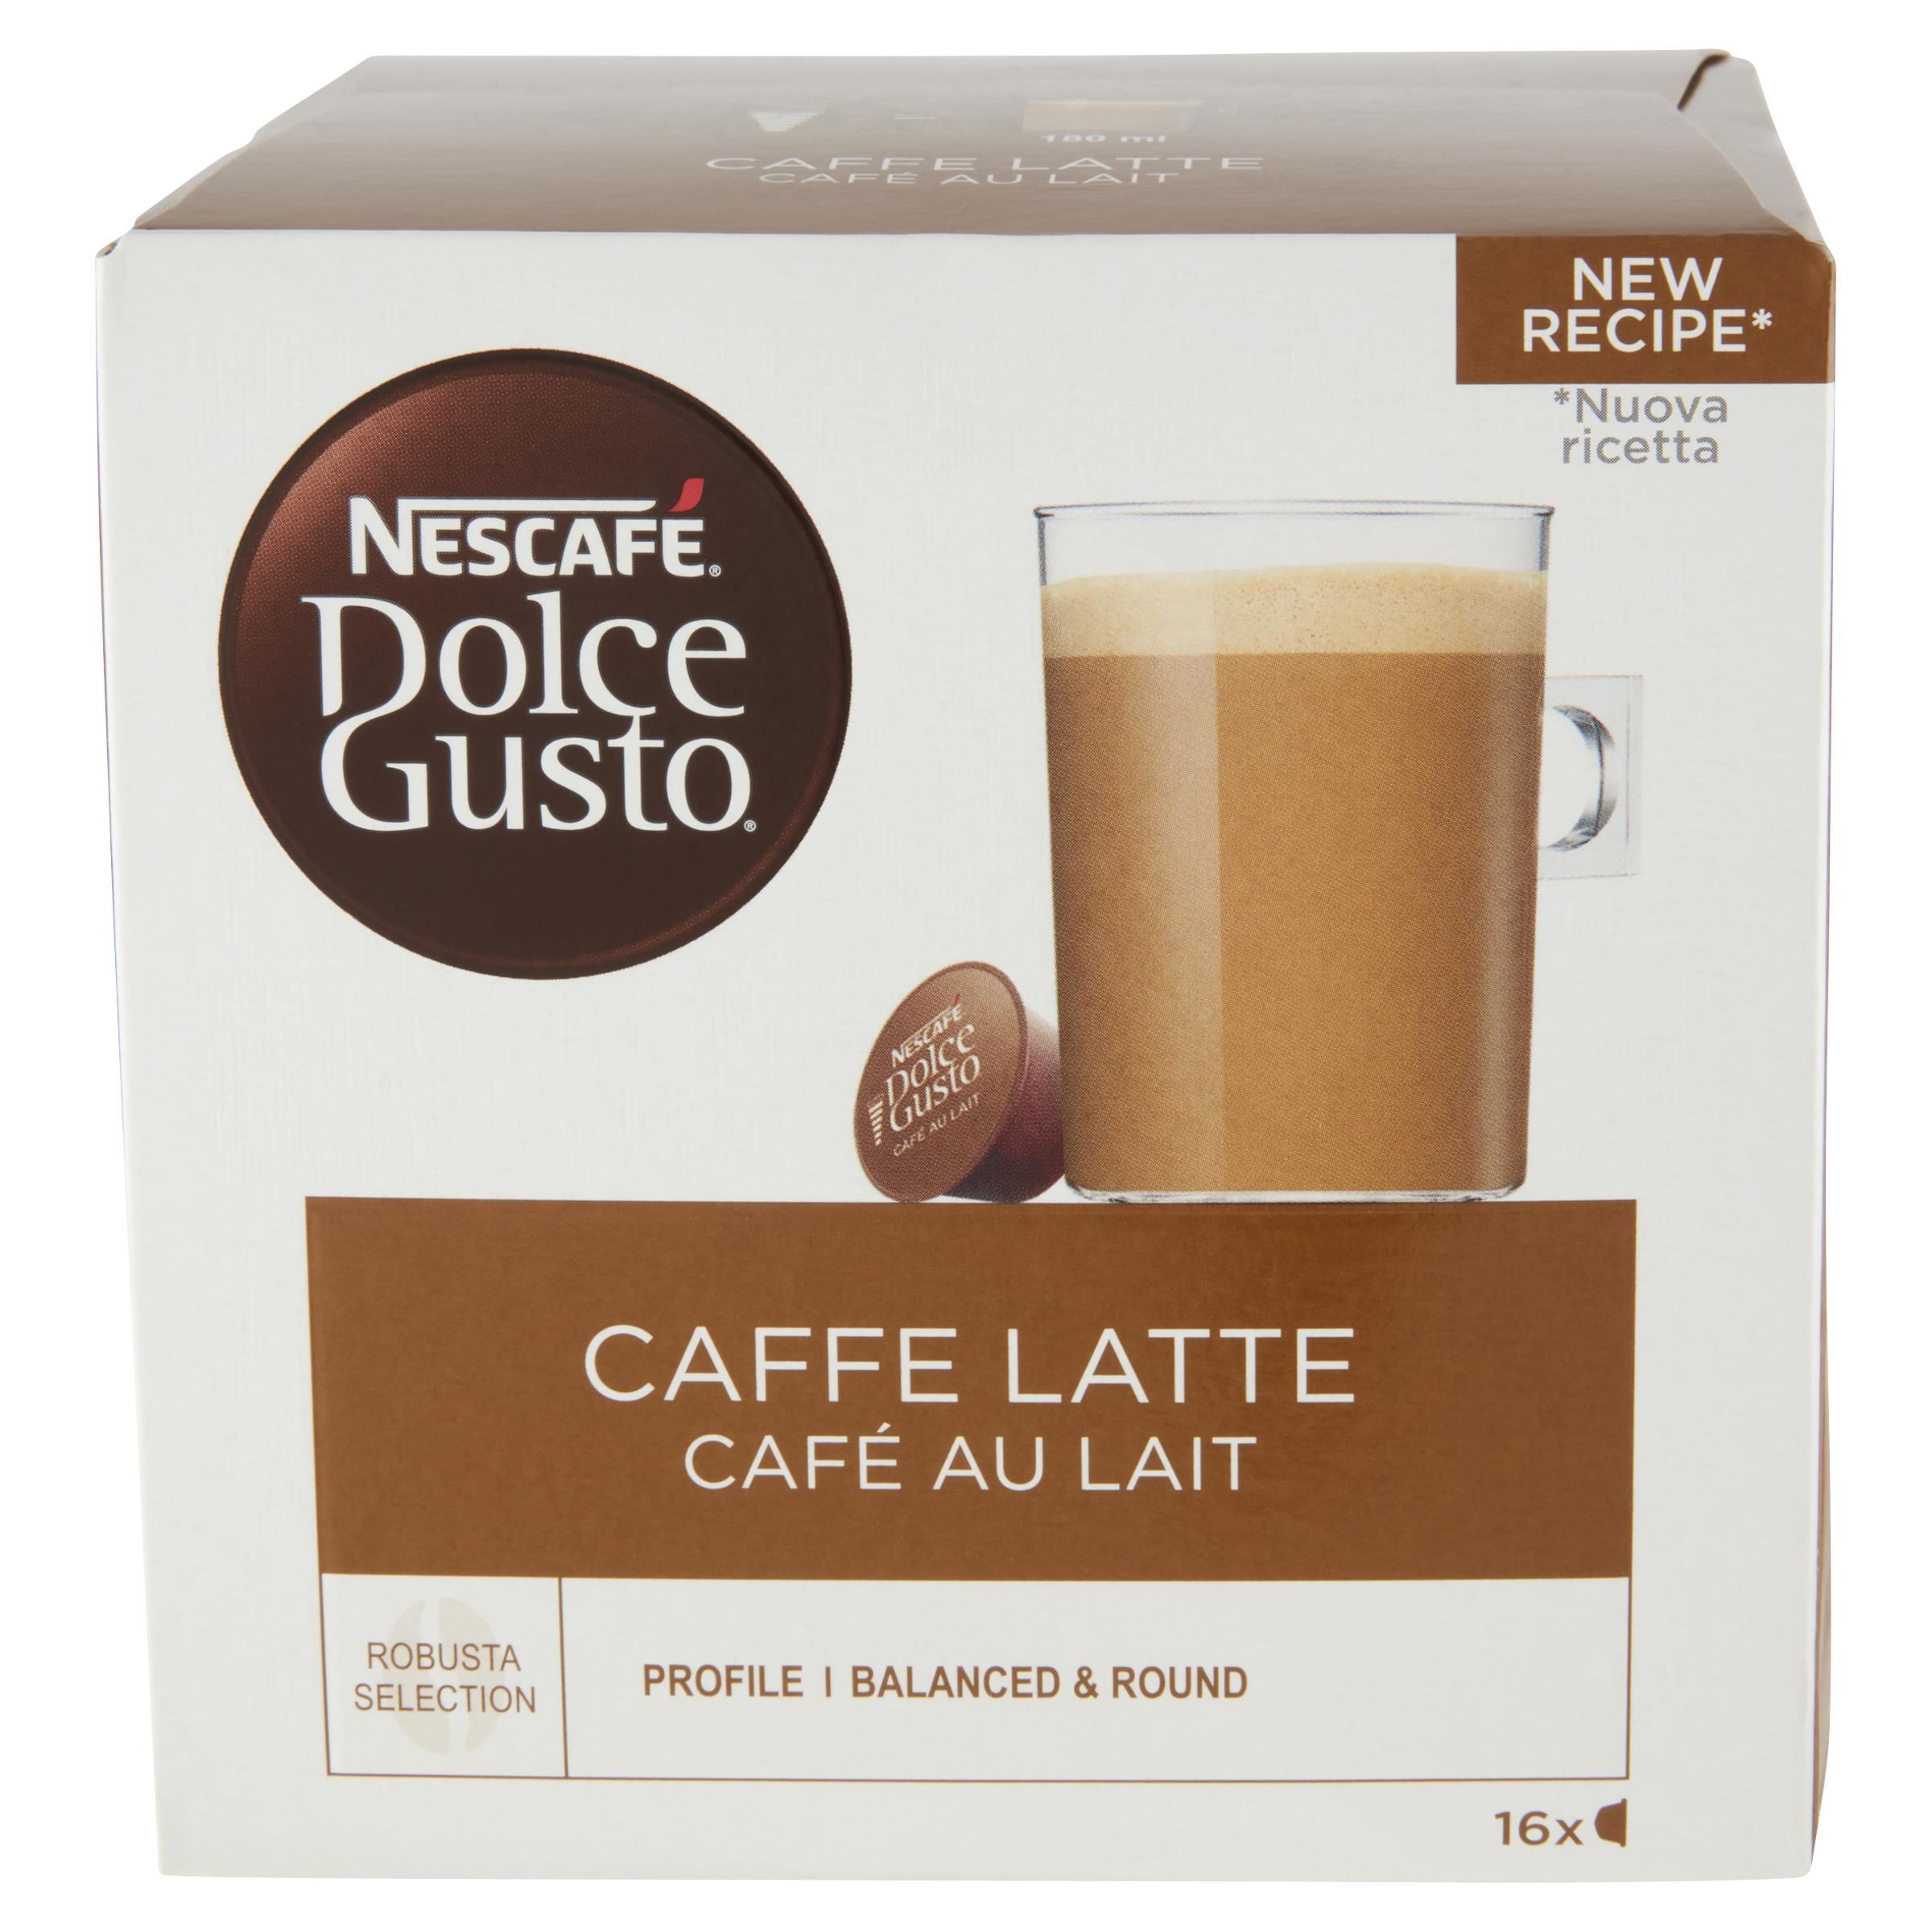 Nescafe Dolce Gusto Caffe